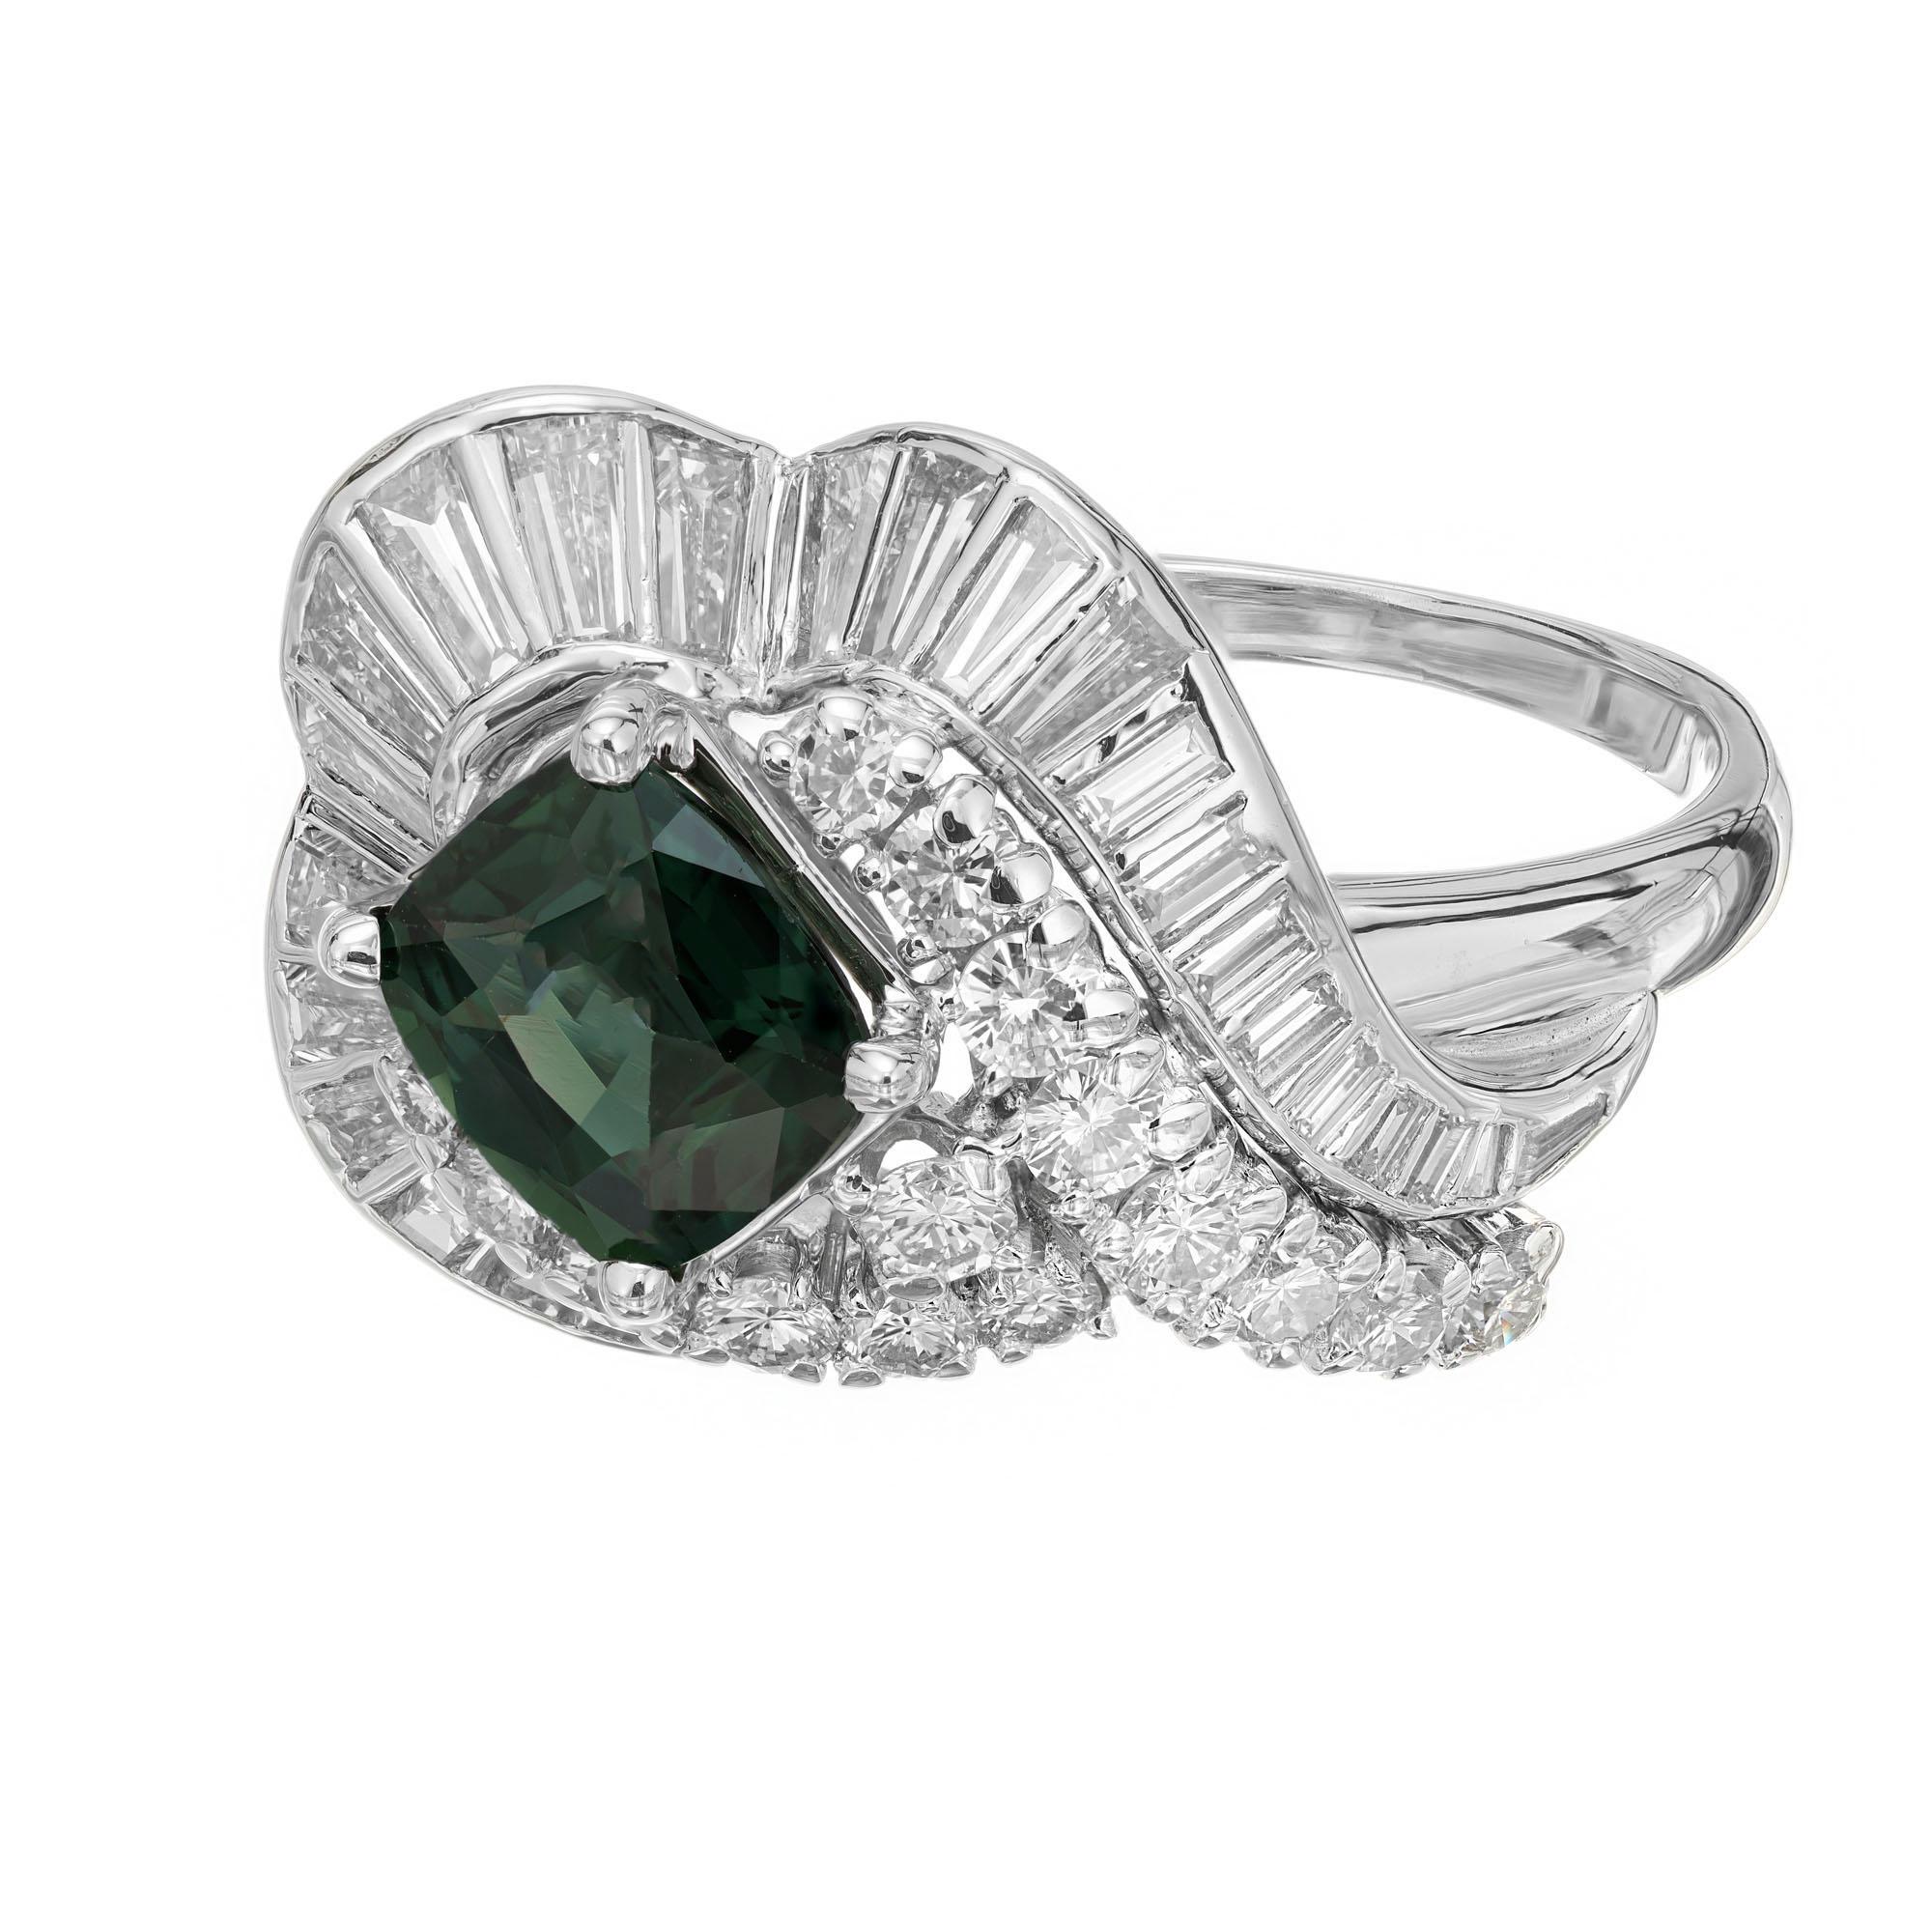 JE Caldwell 1950's Abendessen-Cluster-Cocktail-Ring. GIA-zertifizierter grüner, natürlicher, nicht erhitzter Saphir im Kissenschliff in einer Platinfassung mit 17 runden Brillanten und 28 Diamanten im Baguetteschliff. 

1 grün-blauer Saphir im